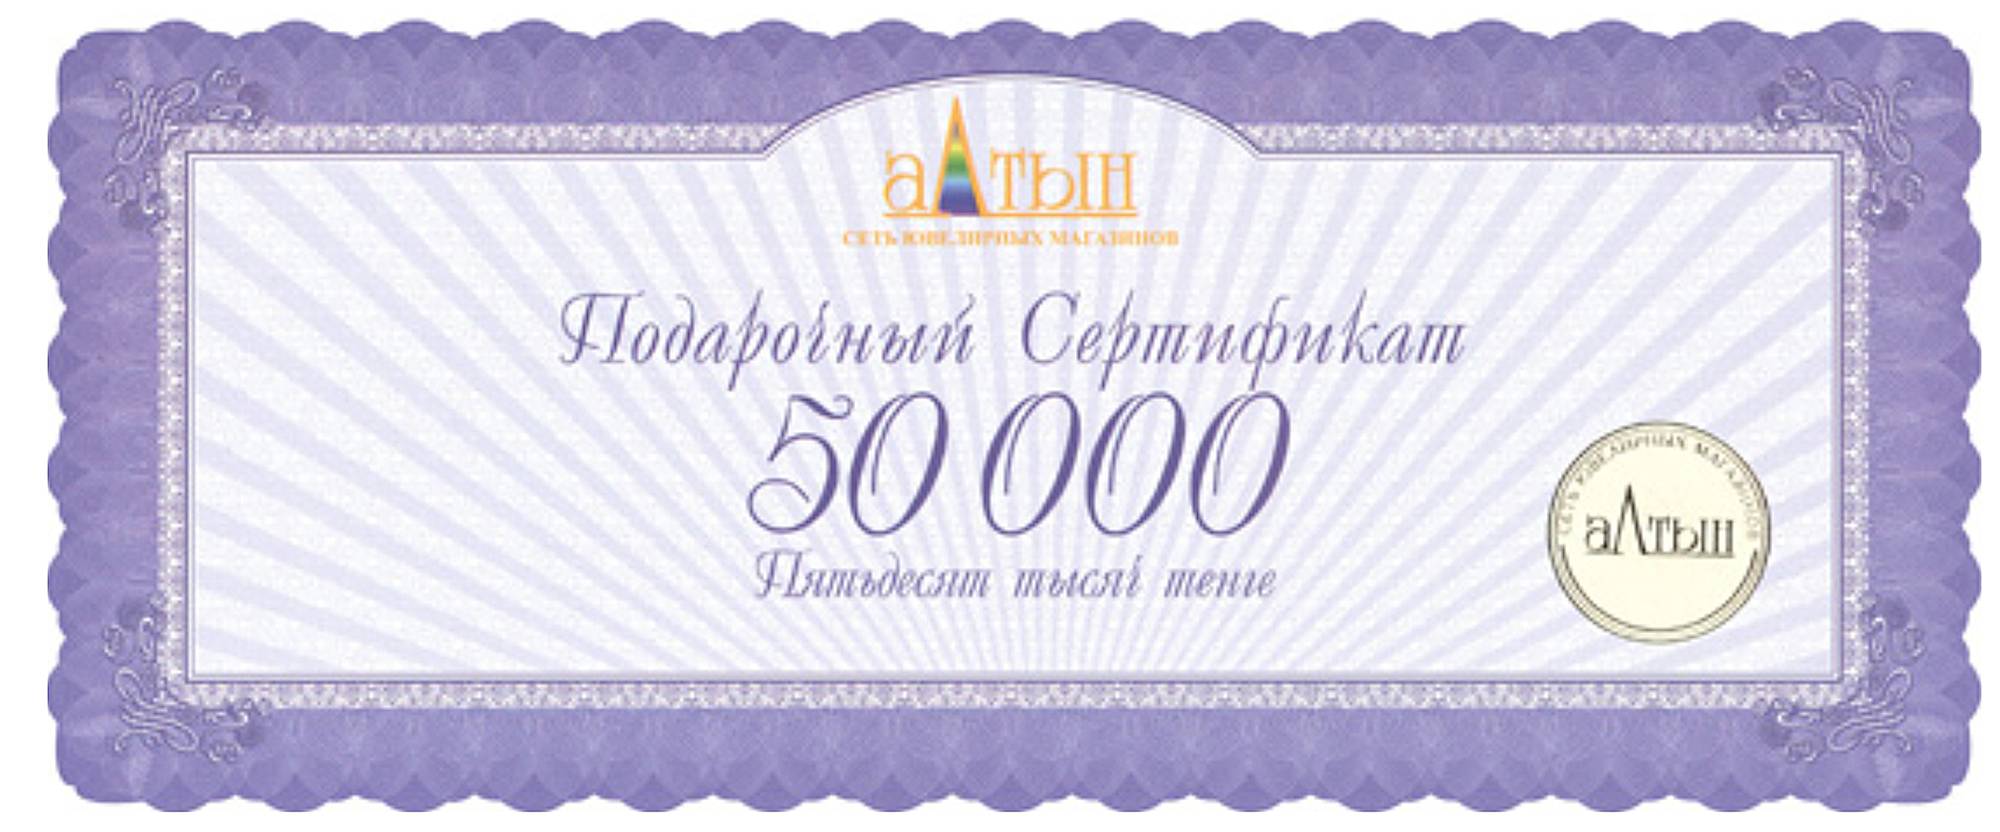 Подарочный сертификат на 50000 KZT